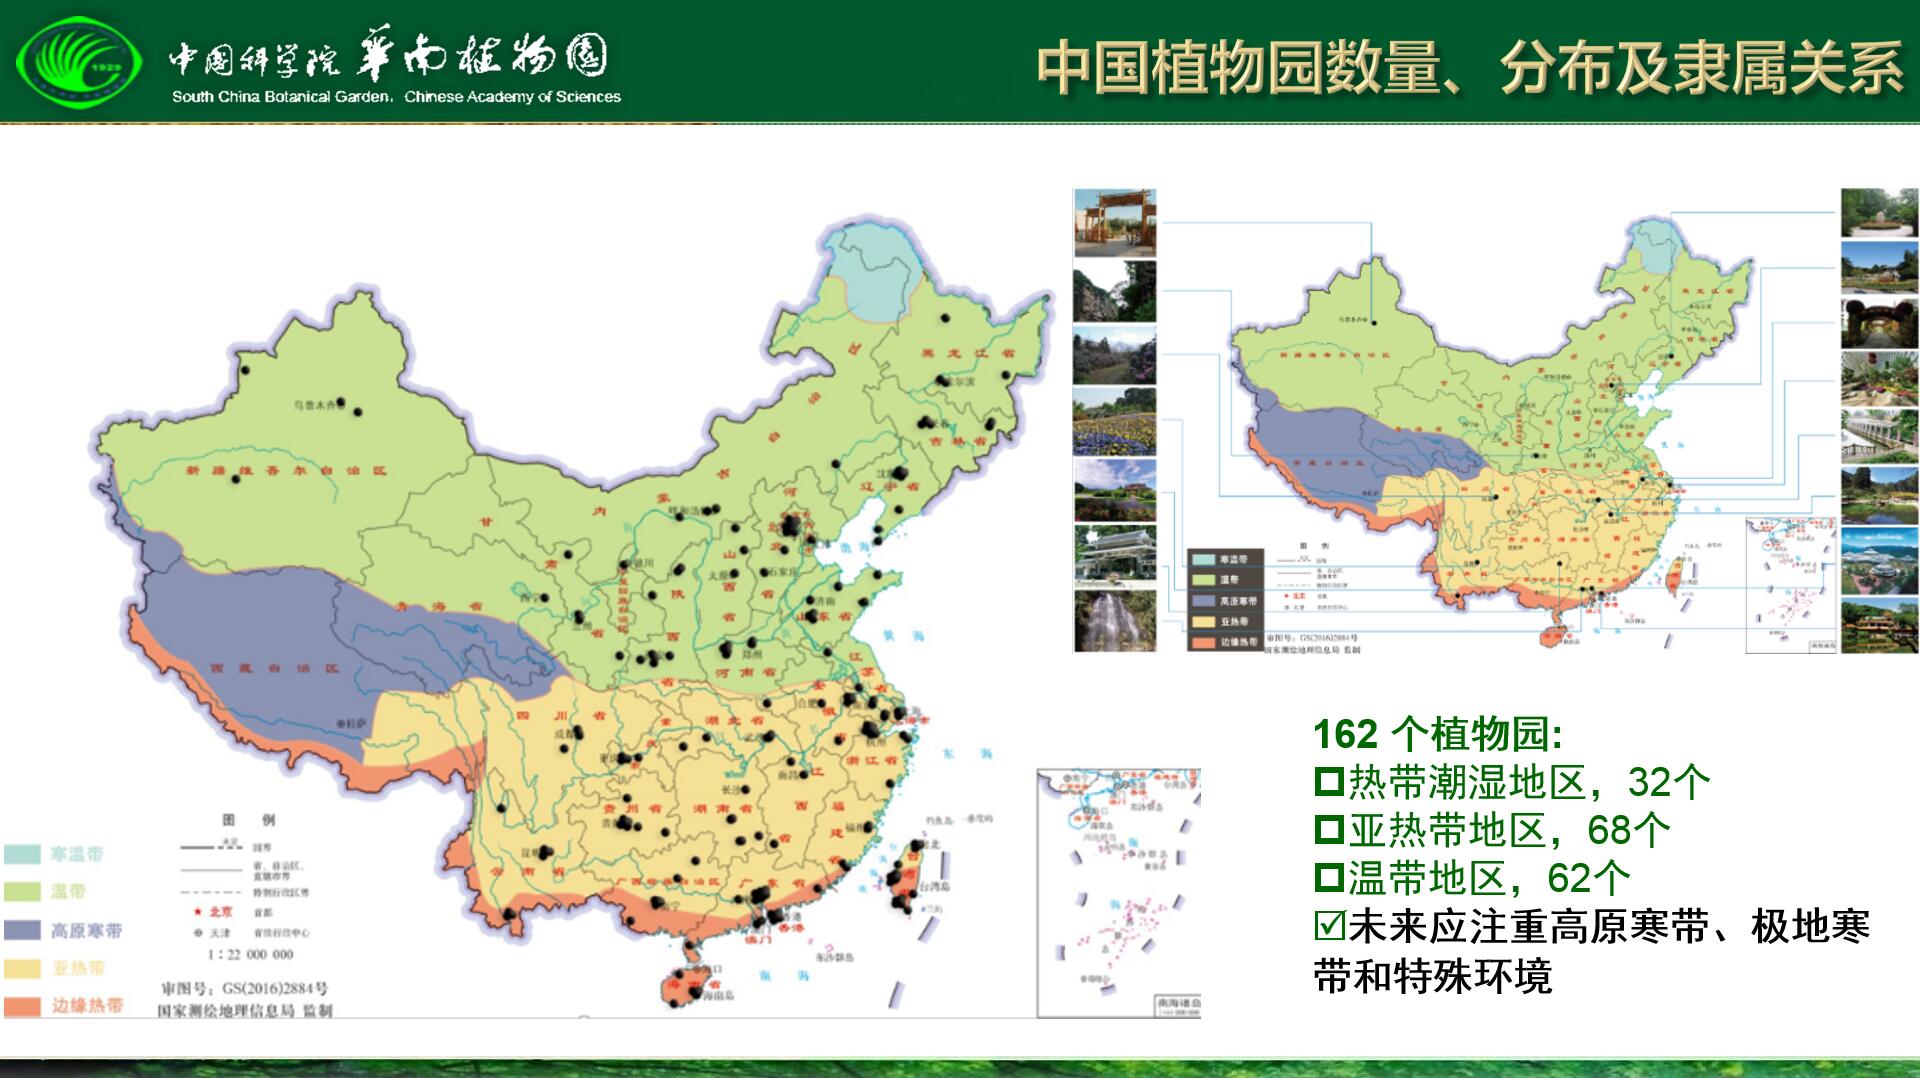 中国植物园历史进展及发展策略